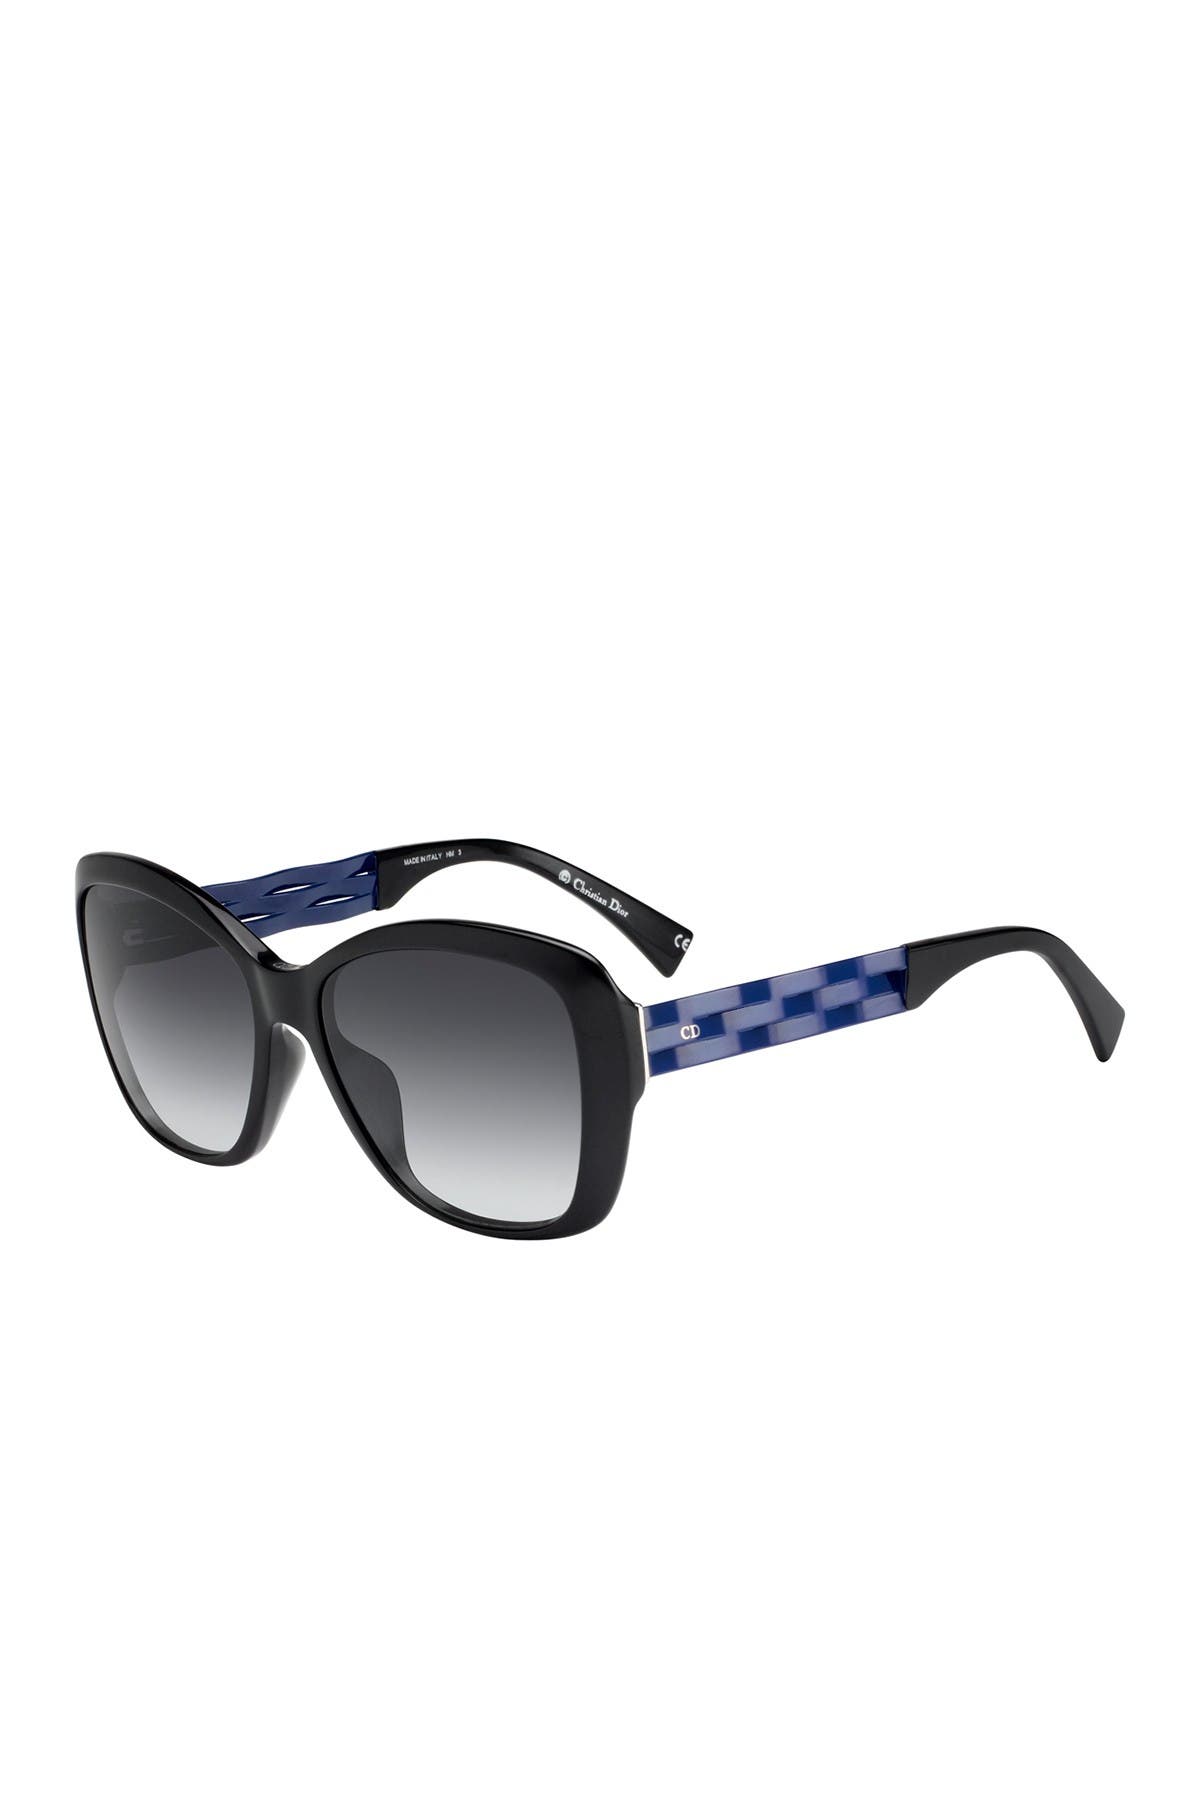 dior ribbon sunglasses